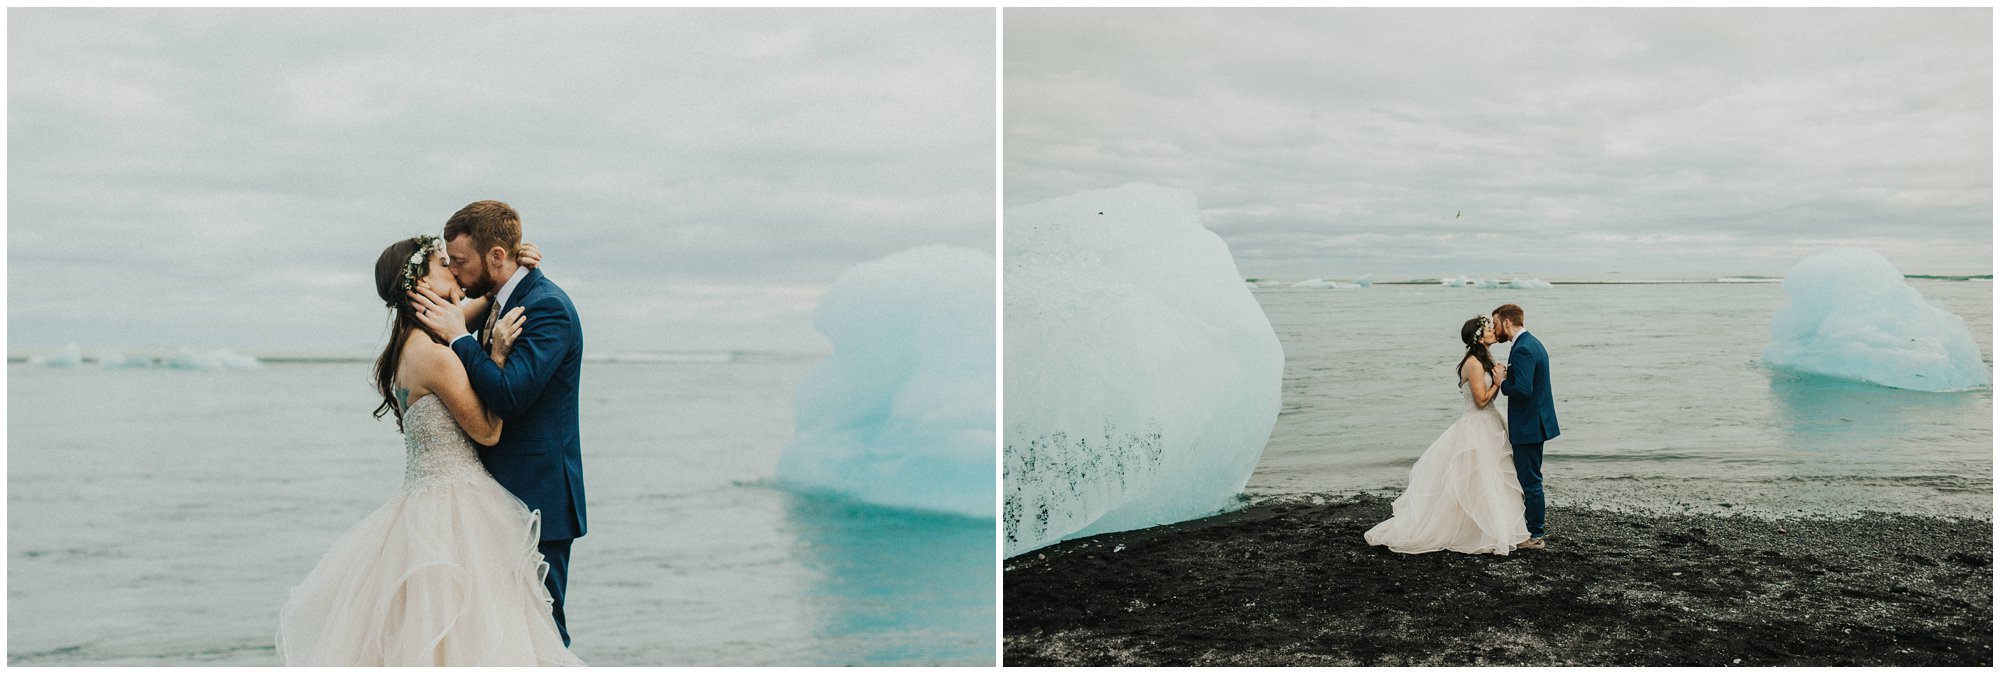 southern iceland wedding elopement diamond beach Jökulsárlón glacier lagoon 